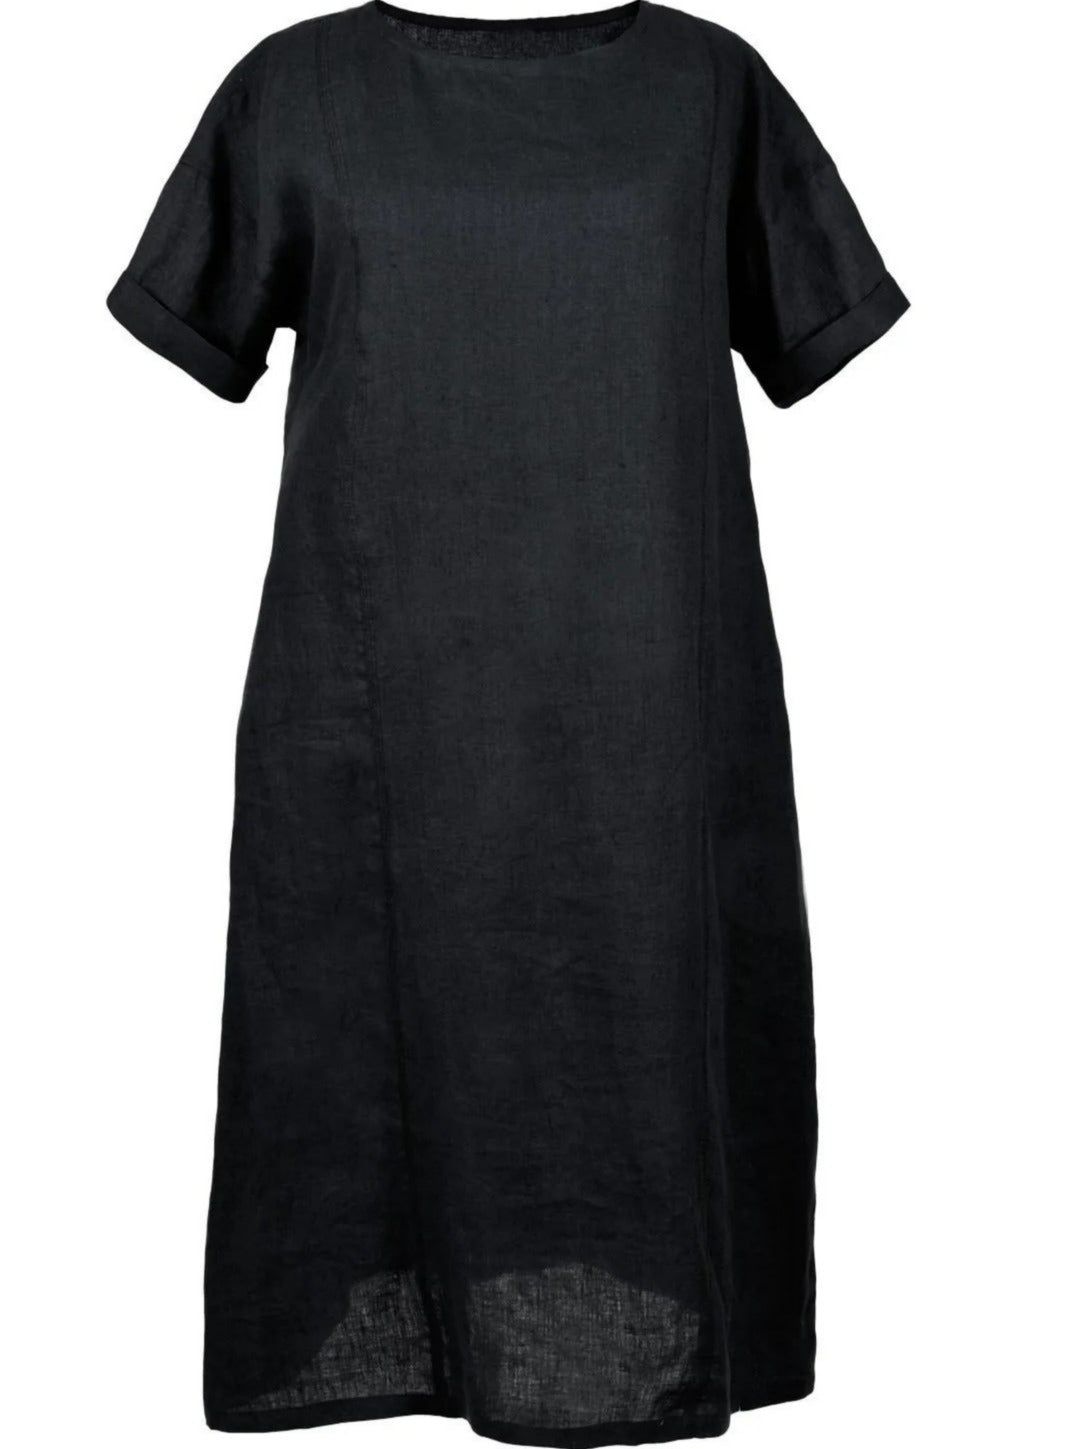 long black linen dress